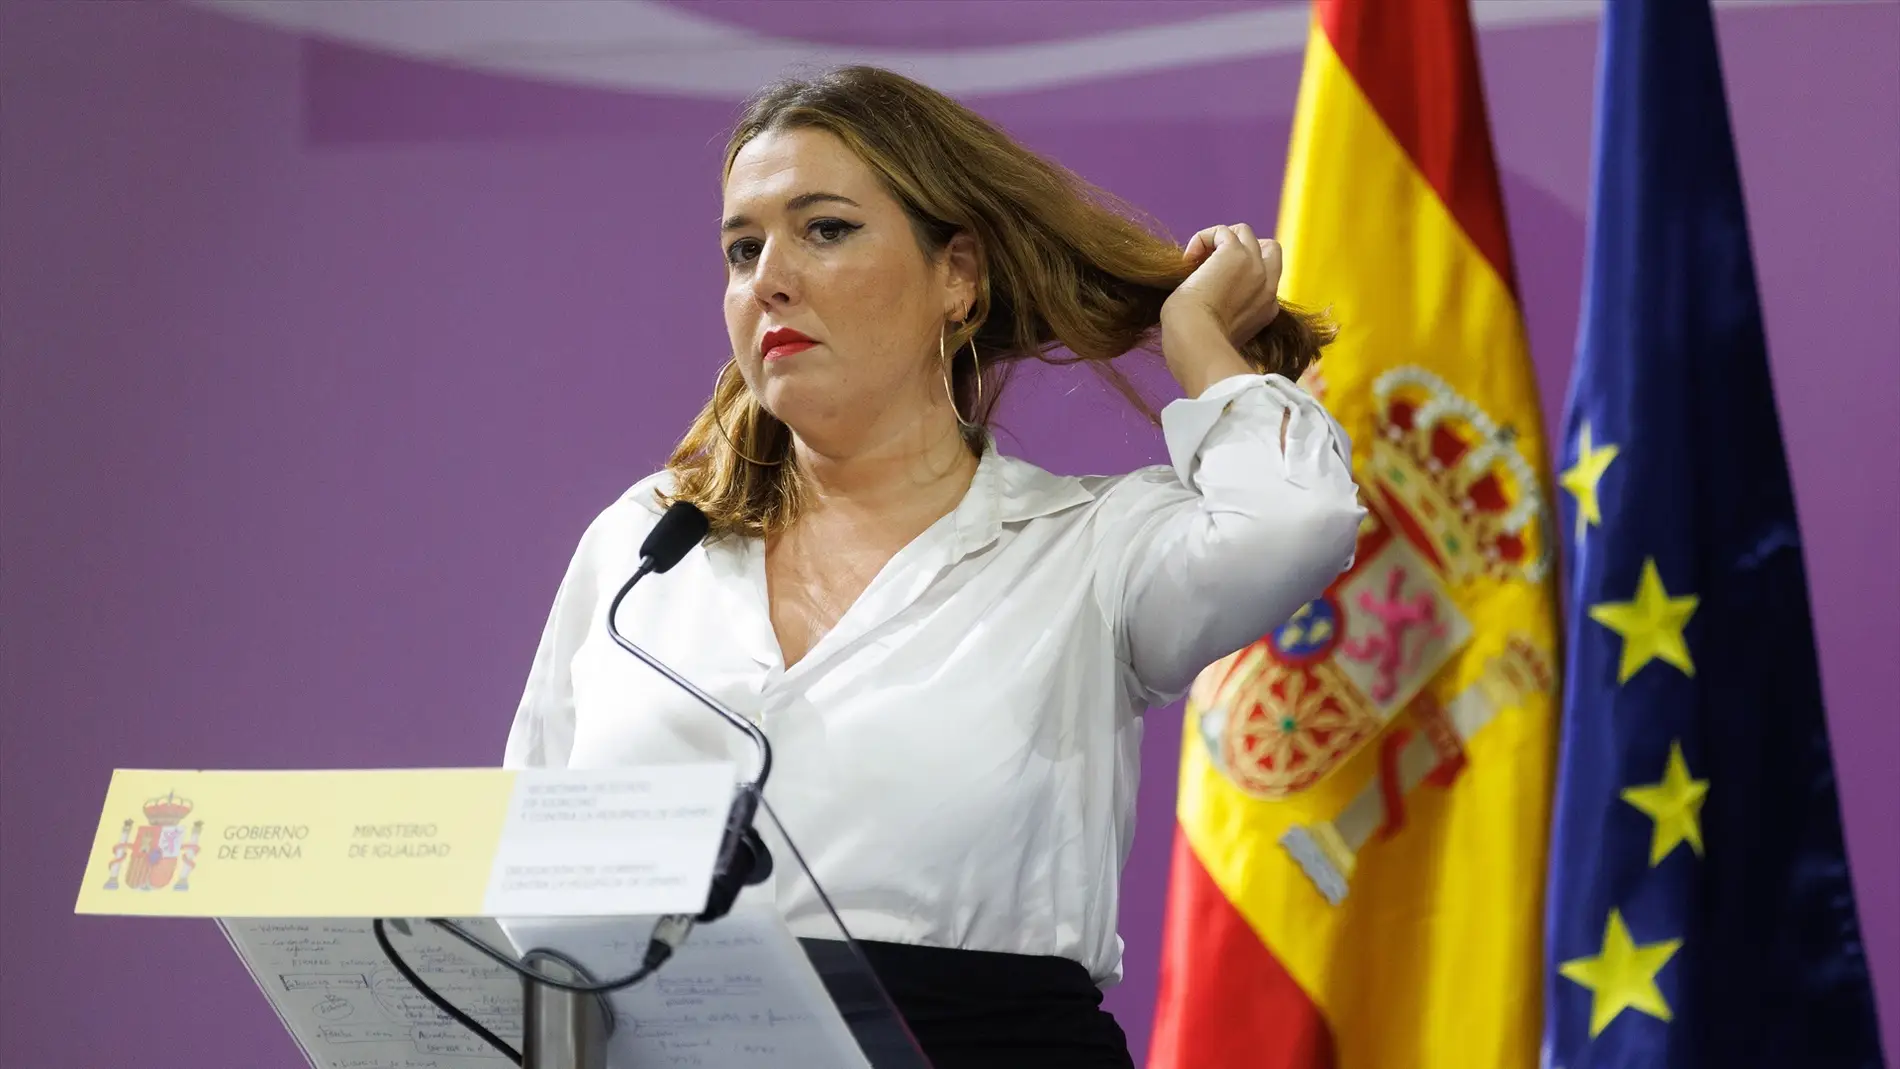 Rodríguez 'Pam' ve el saludo con dos besos una muestra de la "cultura sexual de impunidad y de falta de consentimiento"/ Eduardo Parra / Europa Press